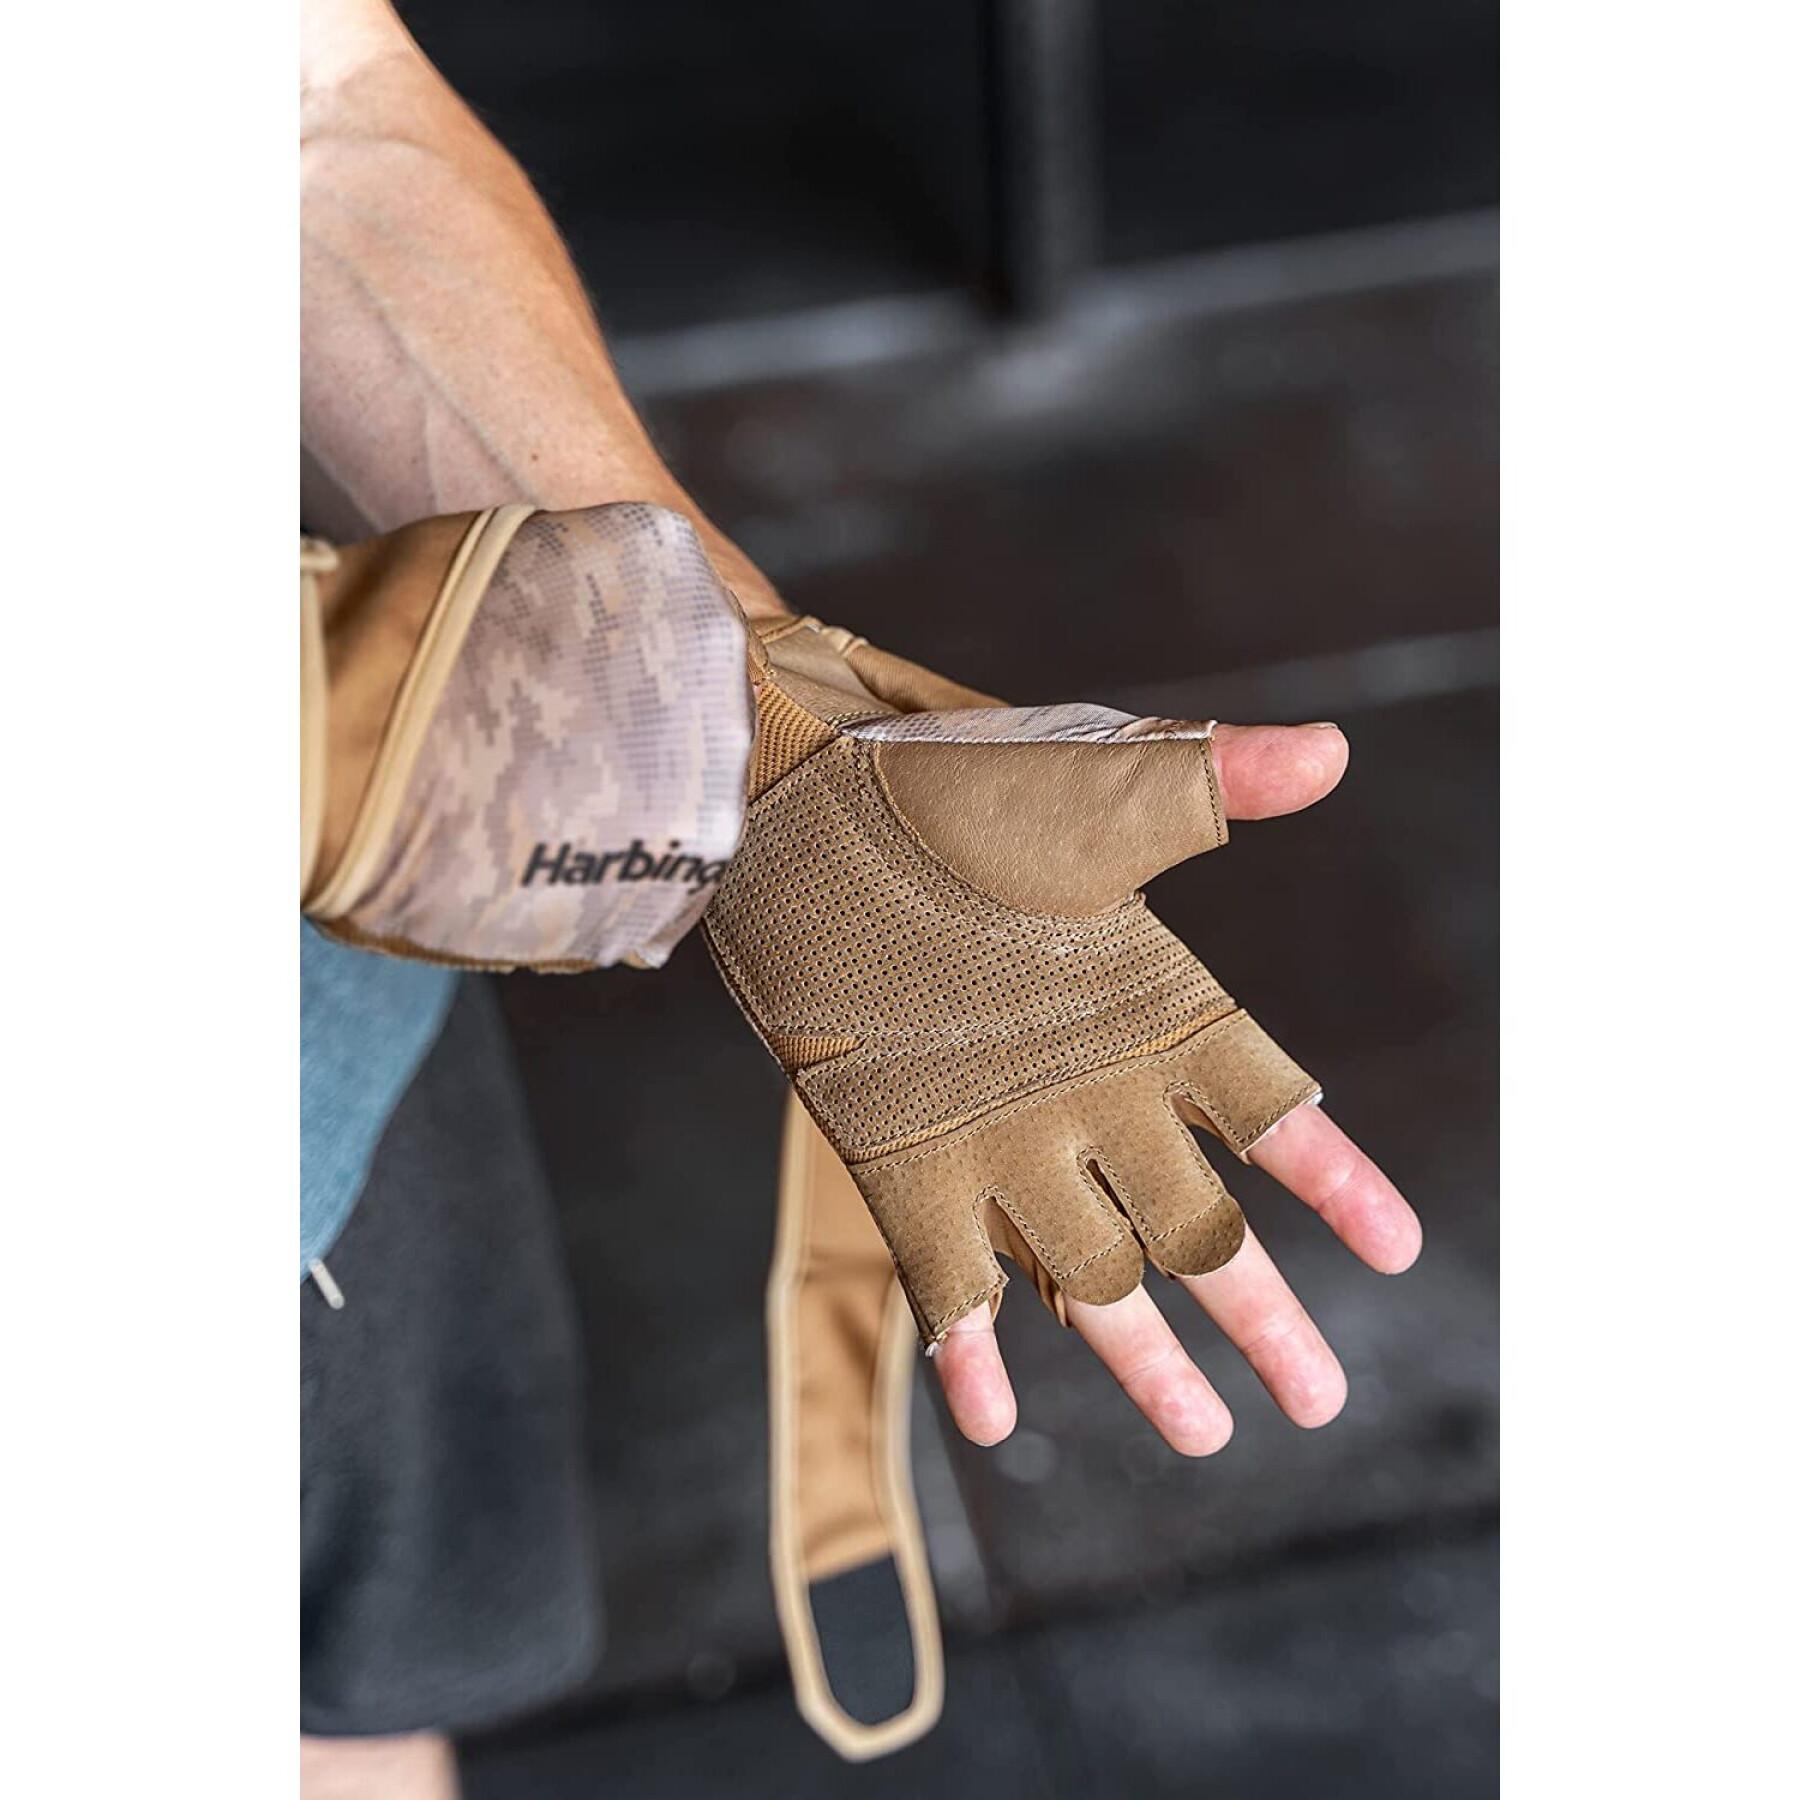 Gloves from Fitness Harbinger Pro WW 2.0